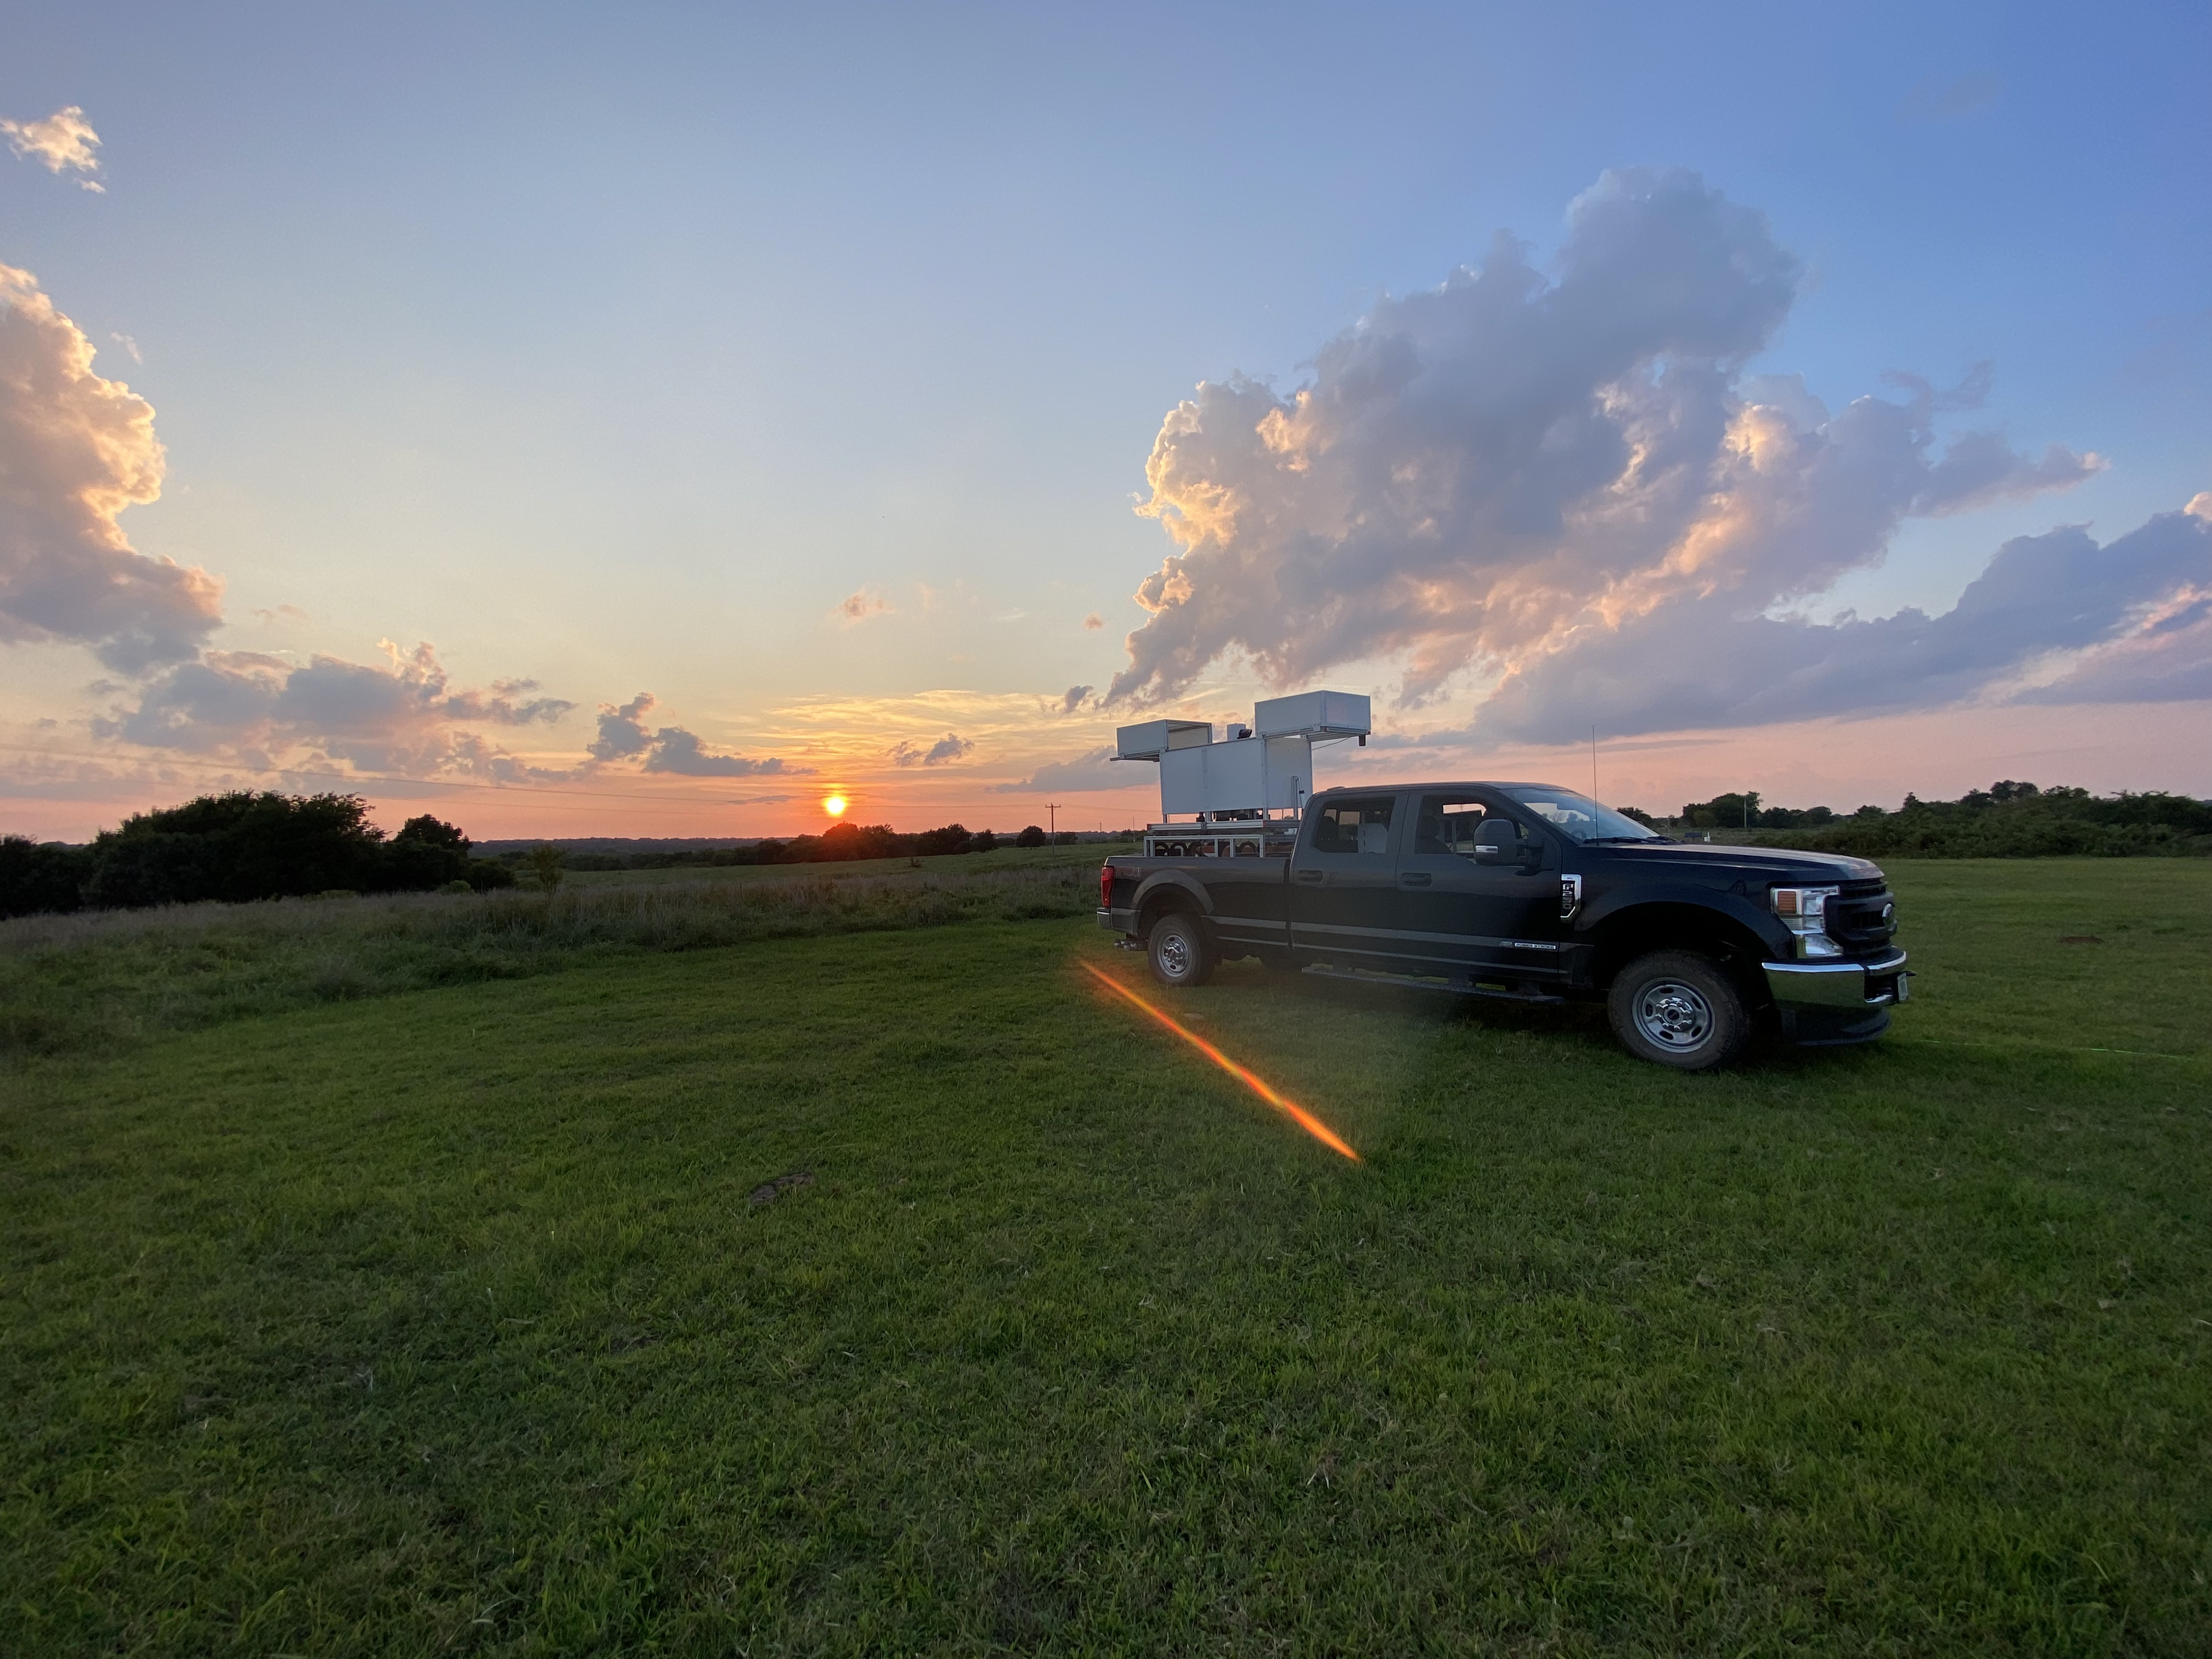 The Doppler lidar truck at sunset.